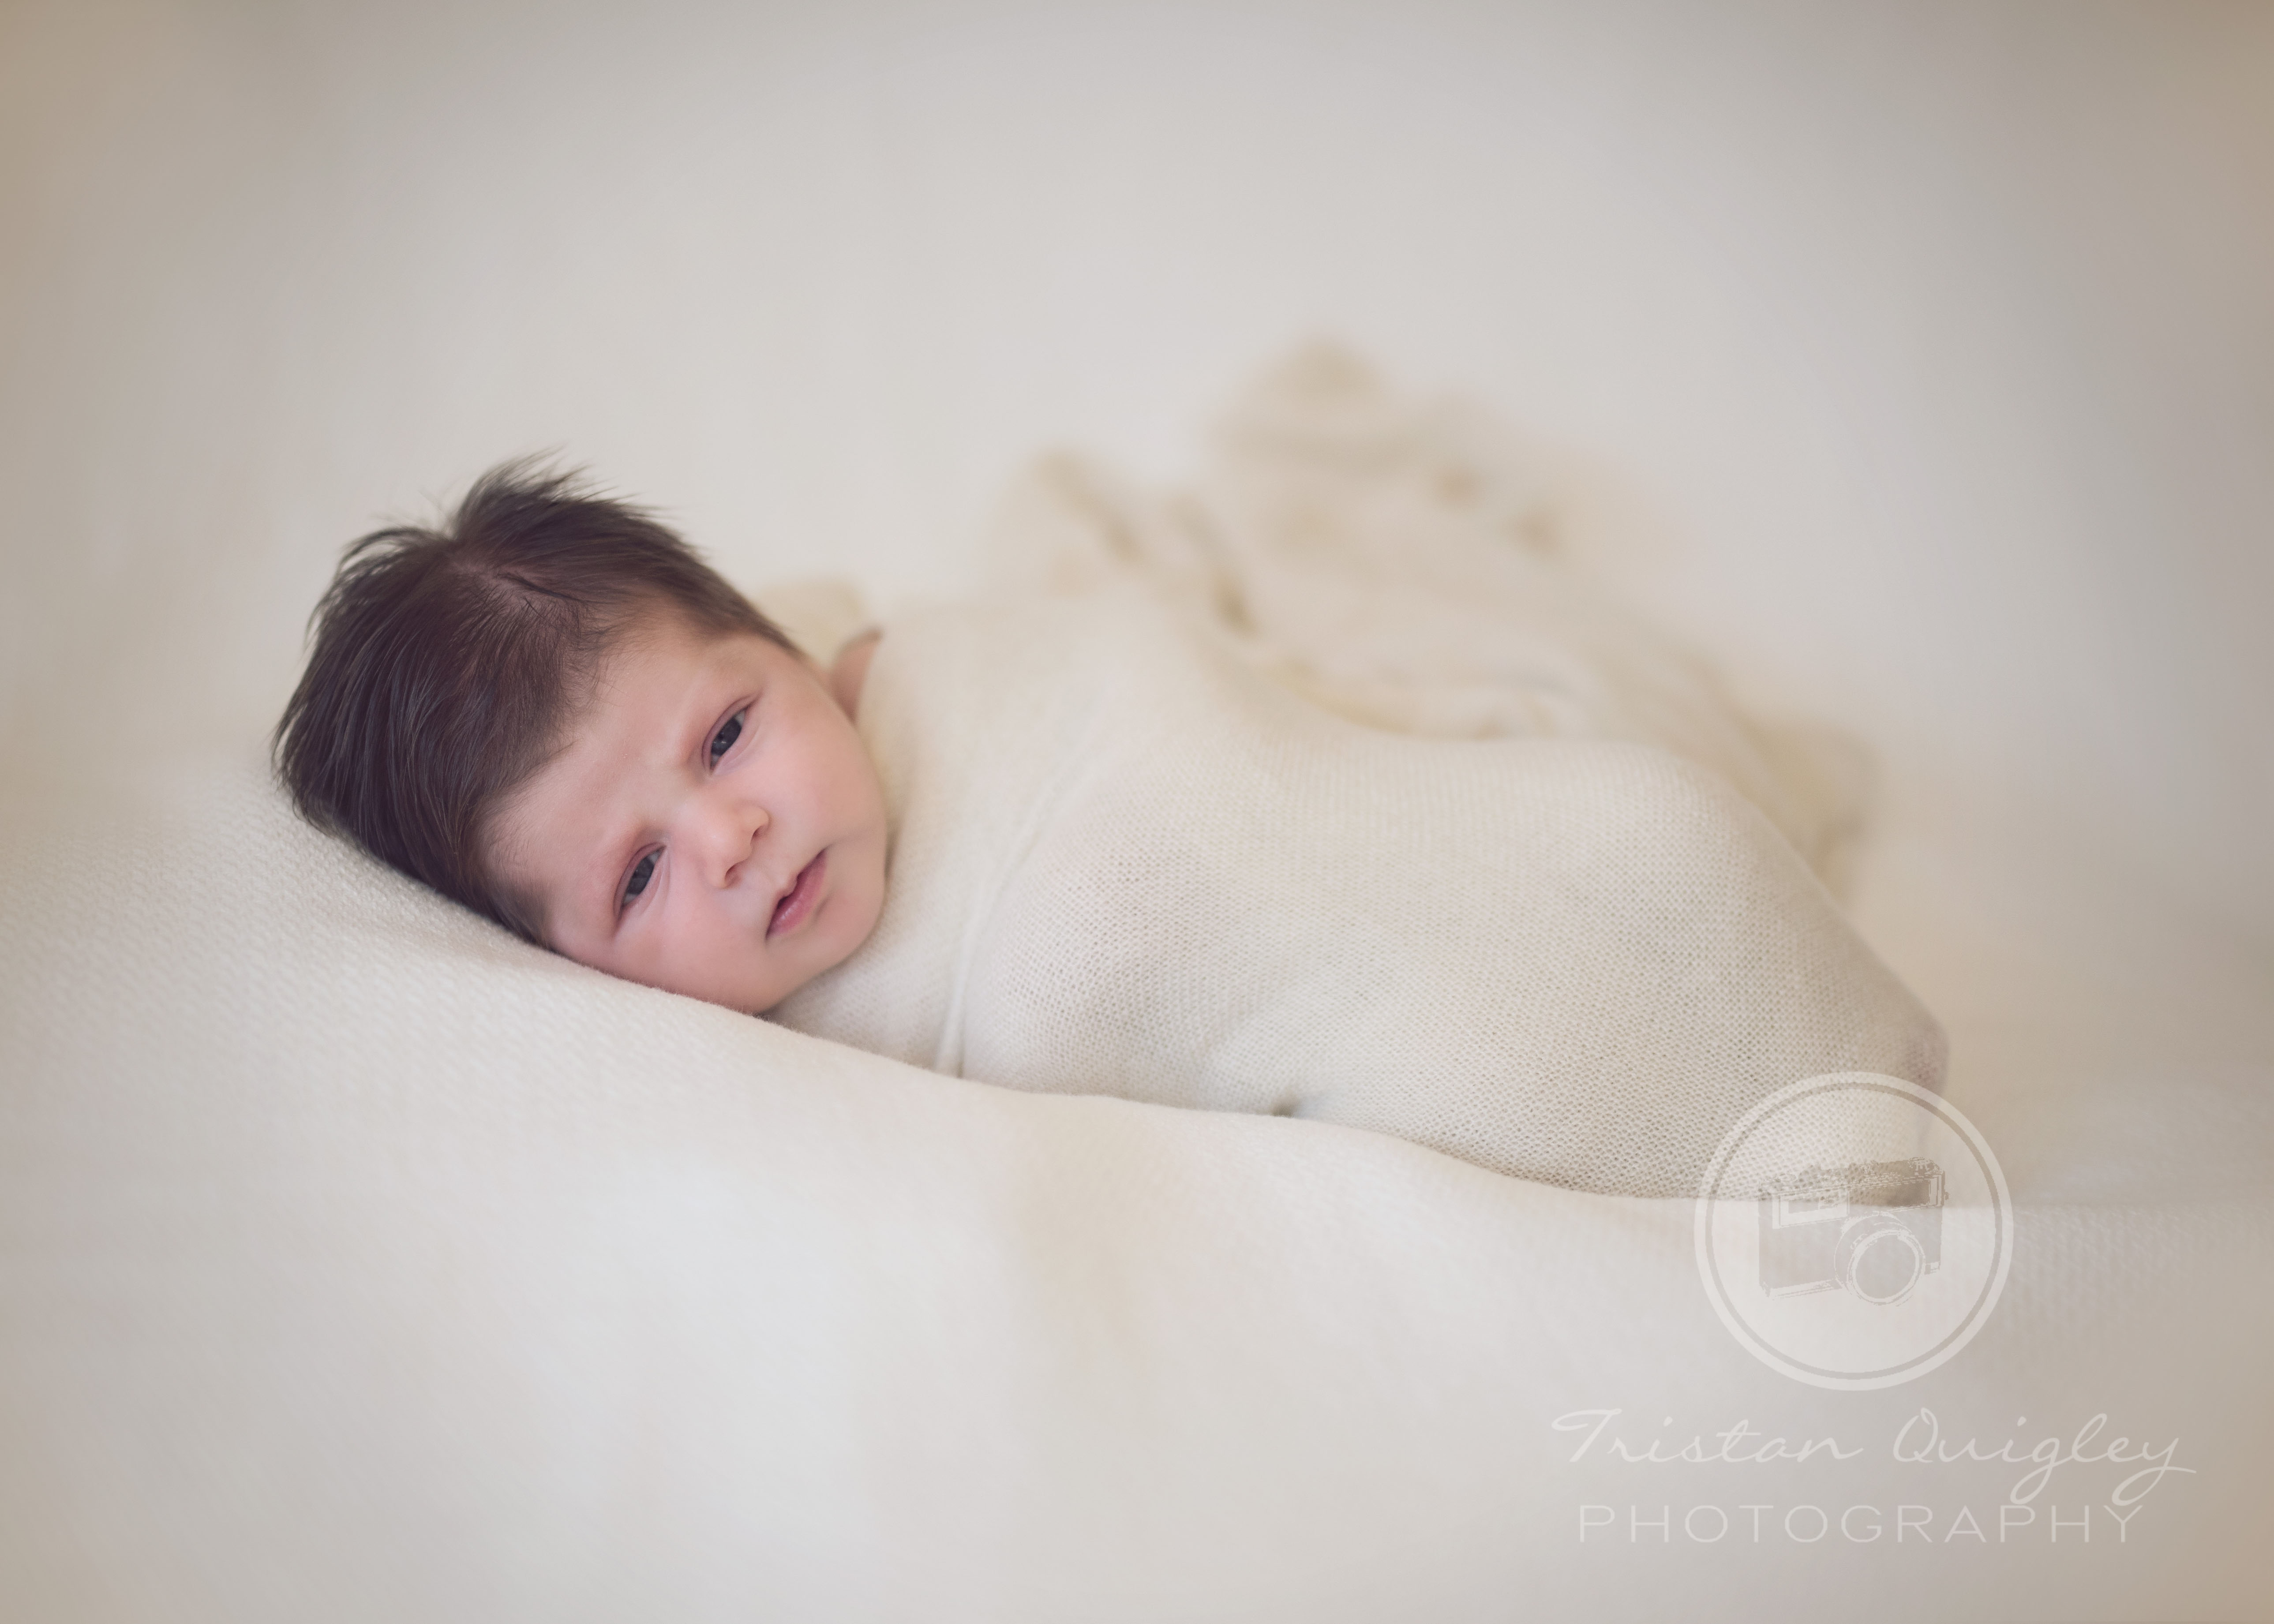 Encinitas Newborn Photography - Encinitas, CA- Tristan Quigley Photography